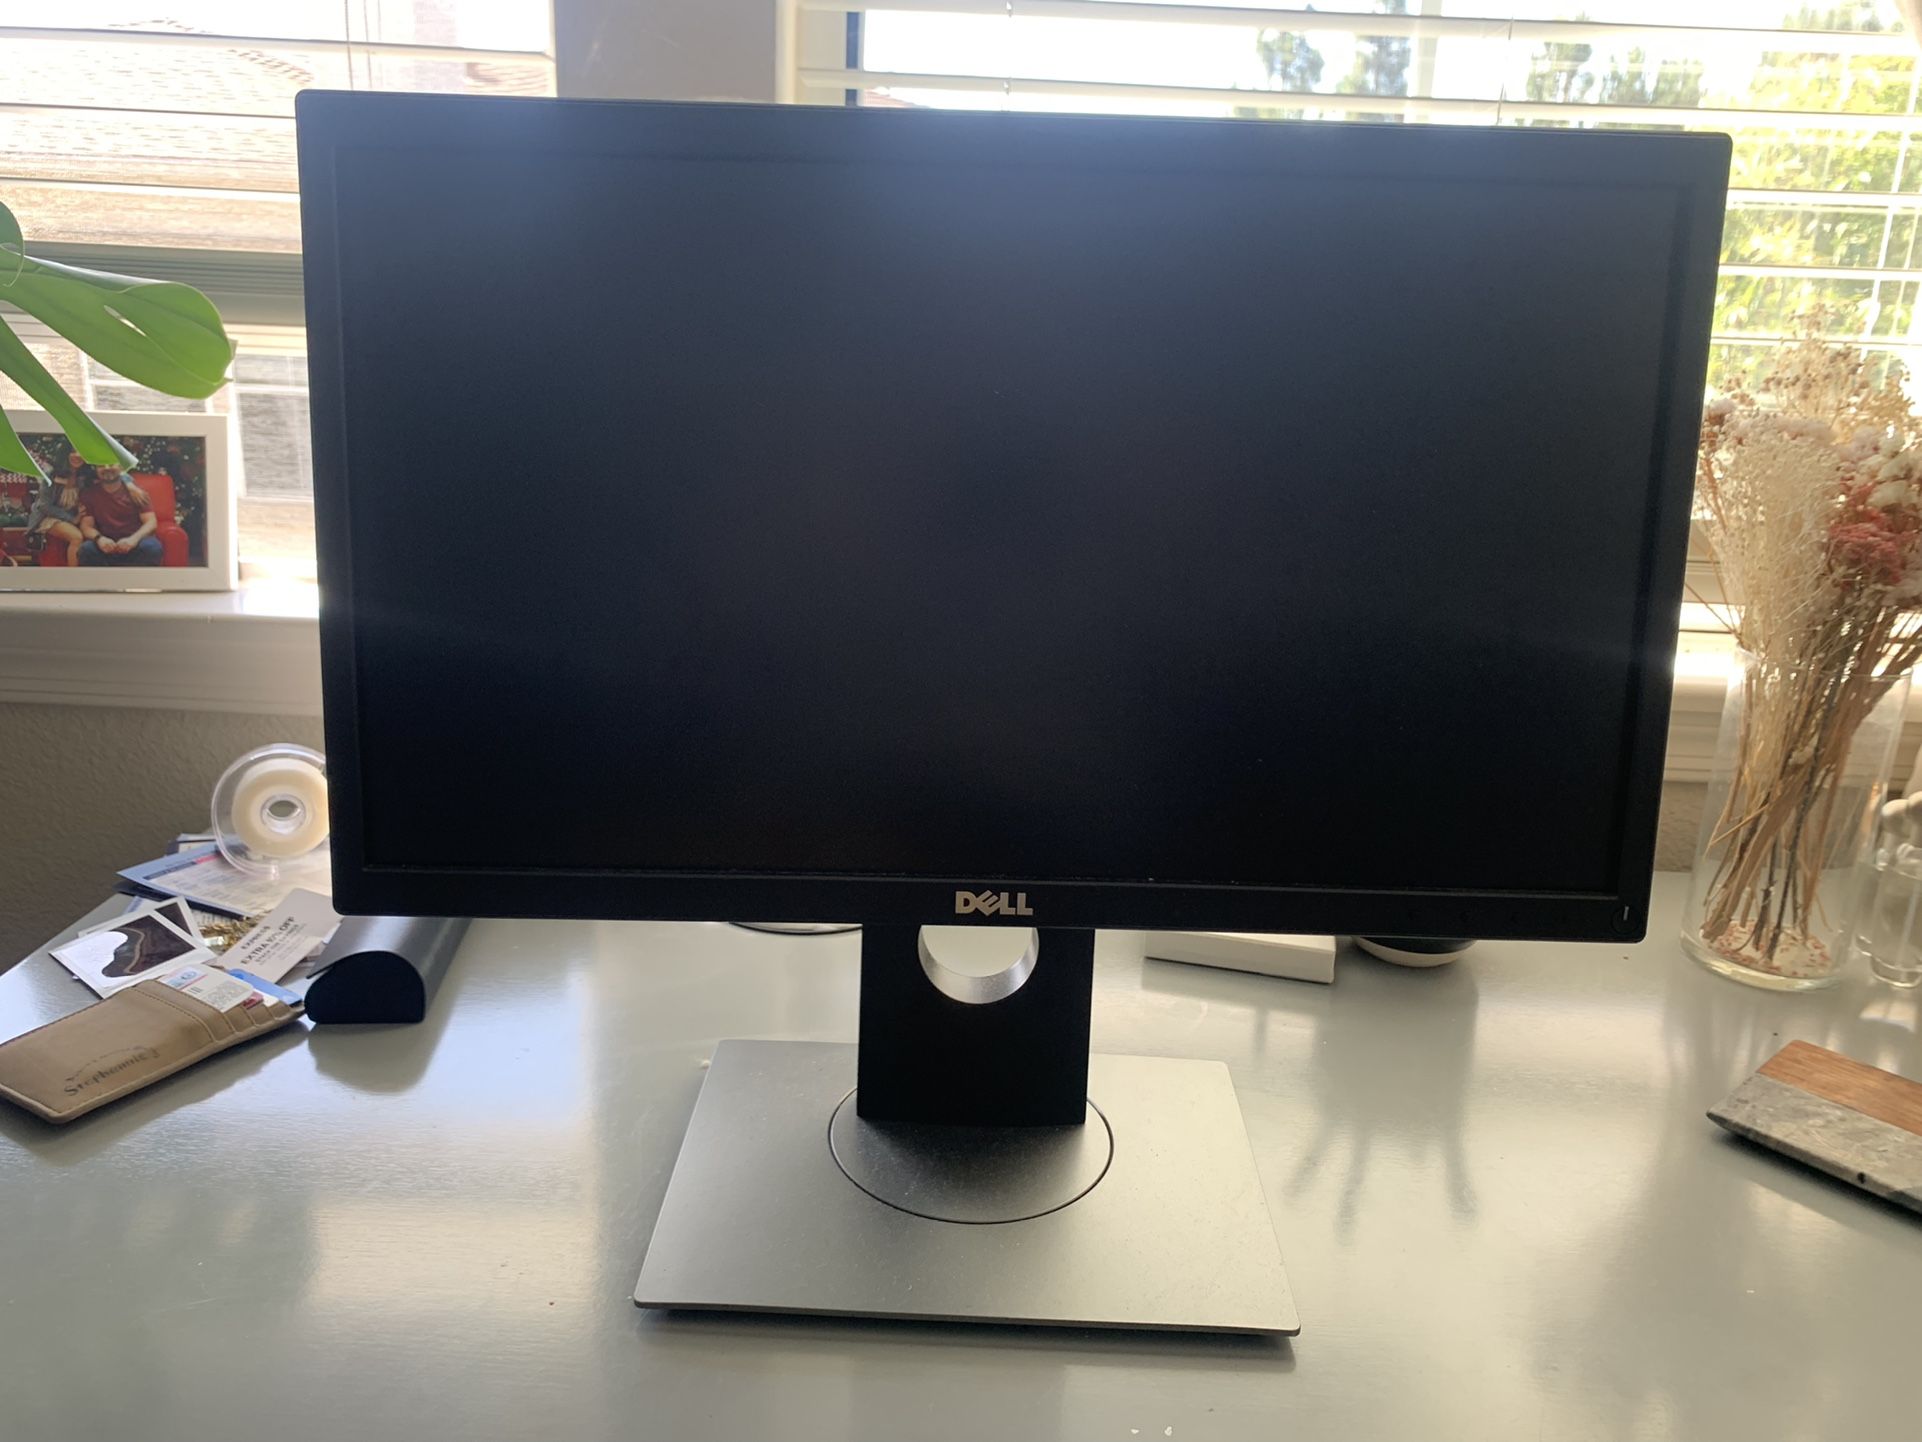 Dell Computer Monitor 